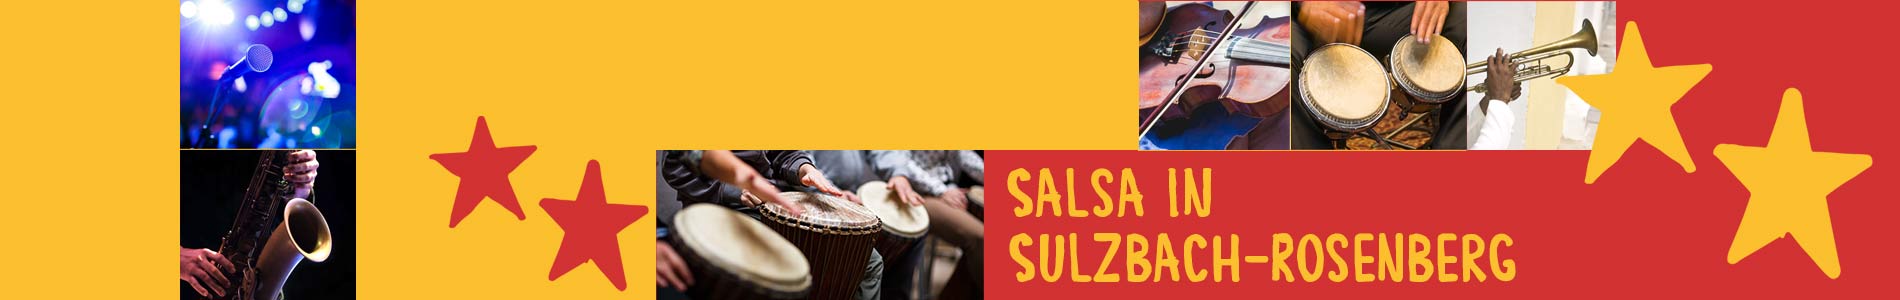 Salsa in Sulzbach – Salsa lernen und tanzen, Tanzkurse, Partys, Veranstaltungen